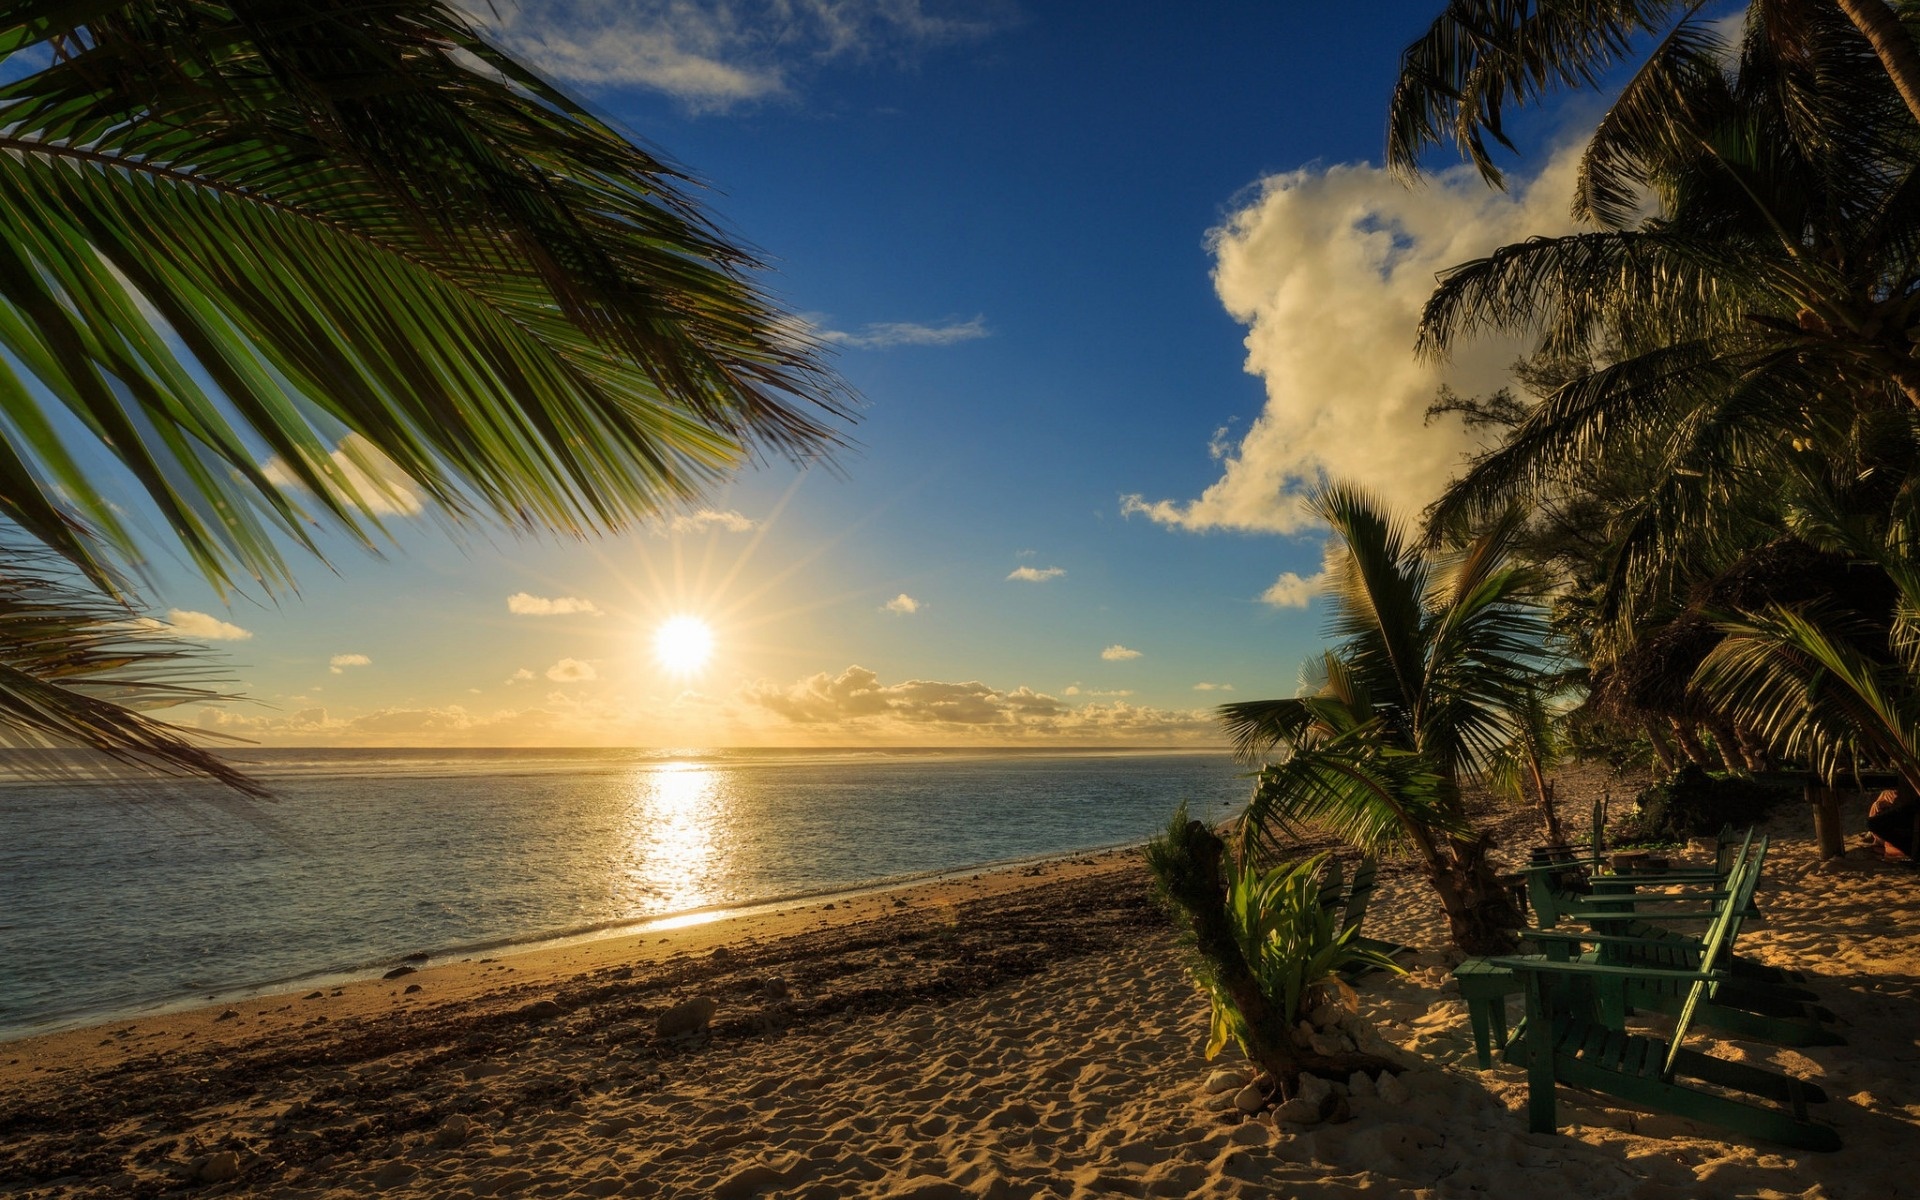 Beach sunset, Palm trees, Cook Islands, Pacific ocean beauty, 1920x1200 HD Desktop